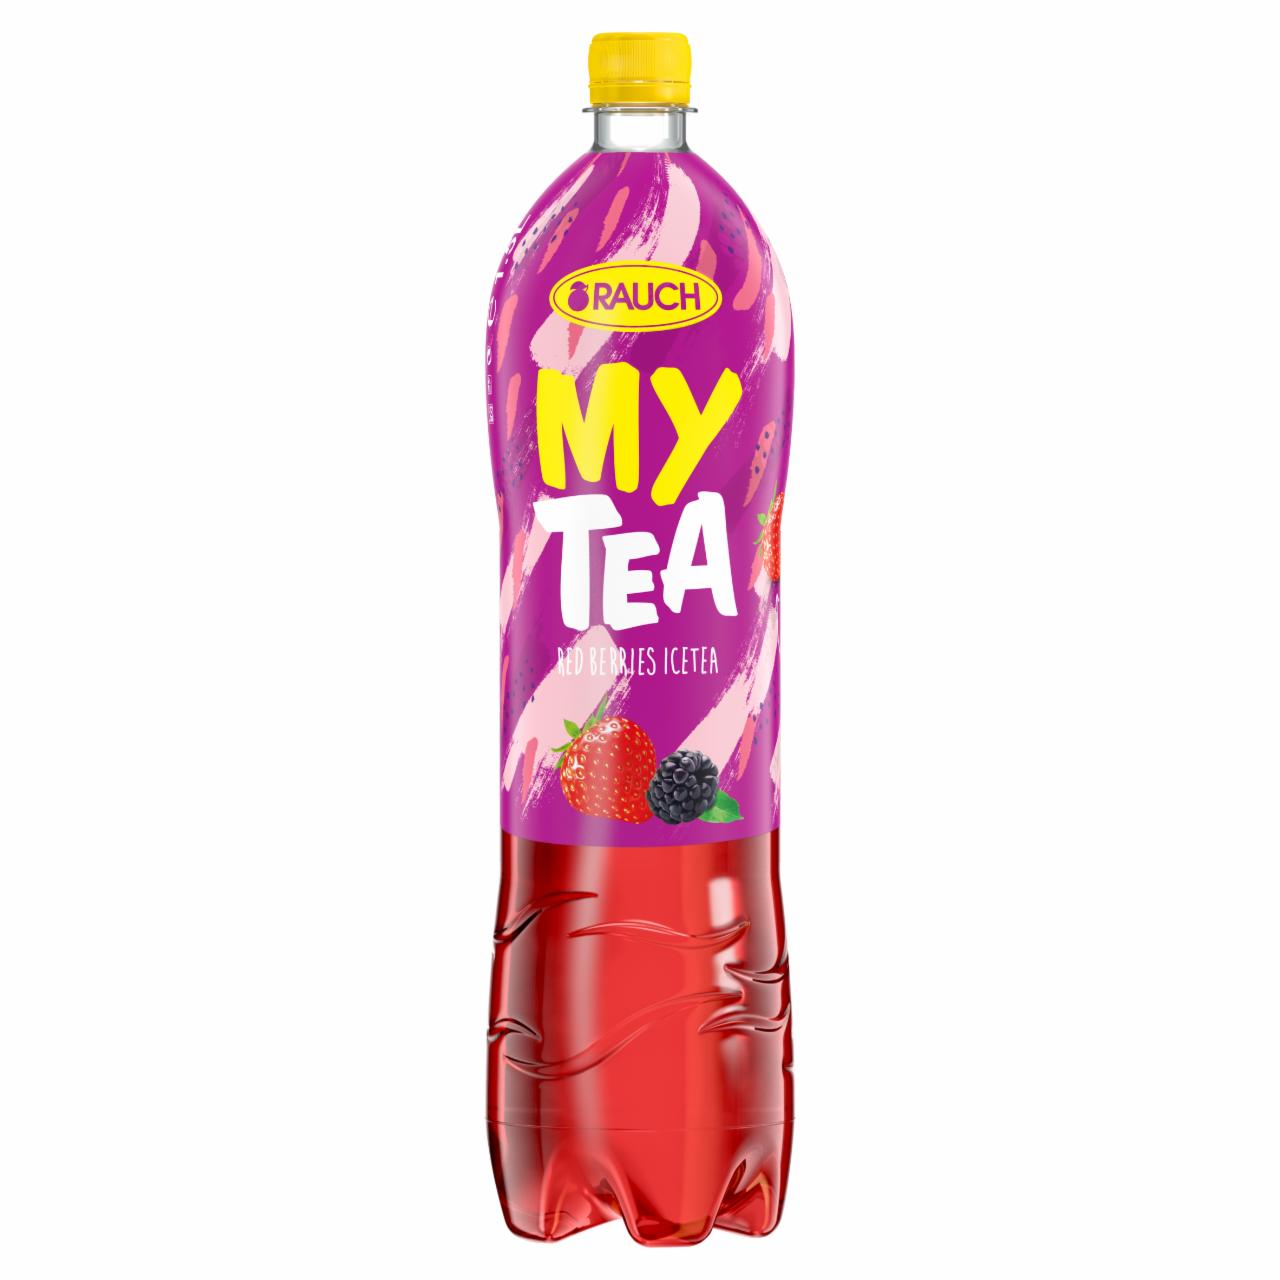 Képek - Rauch My Tea Ice Tea piros gyümölcs üdítőital gyümölcsteából 1,5 l